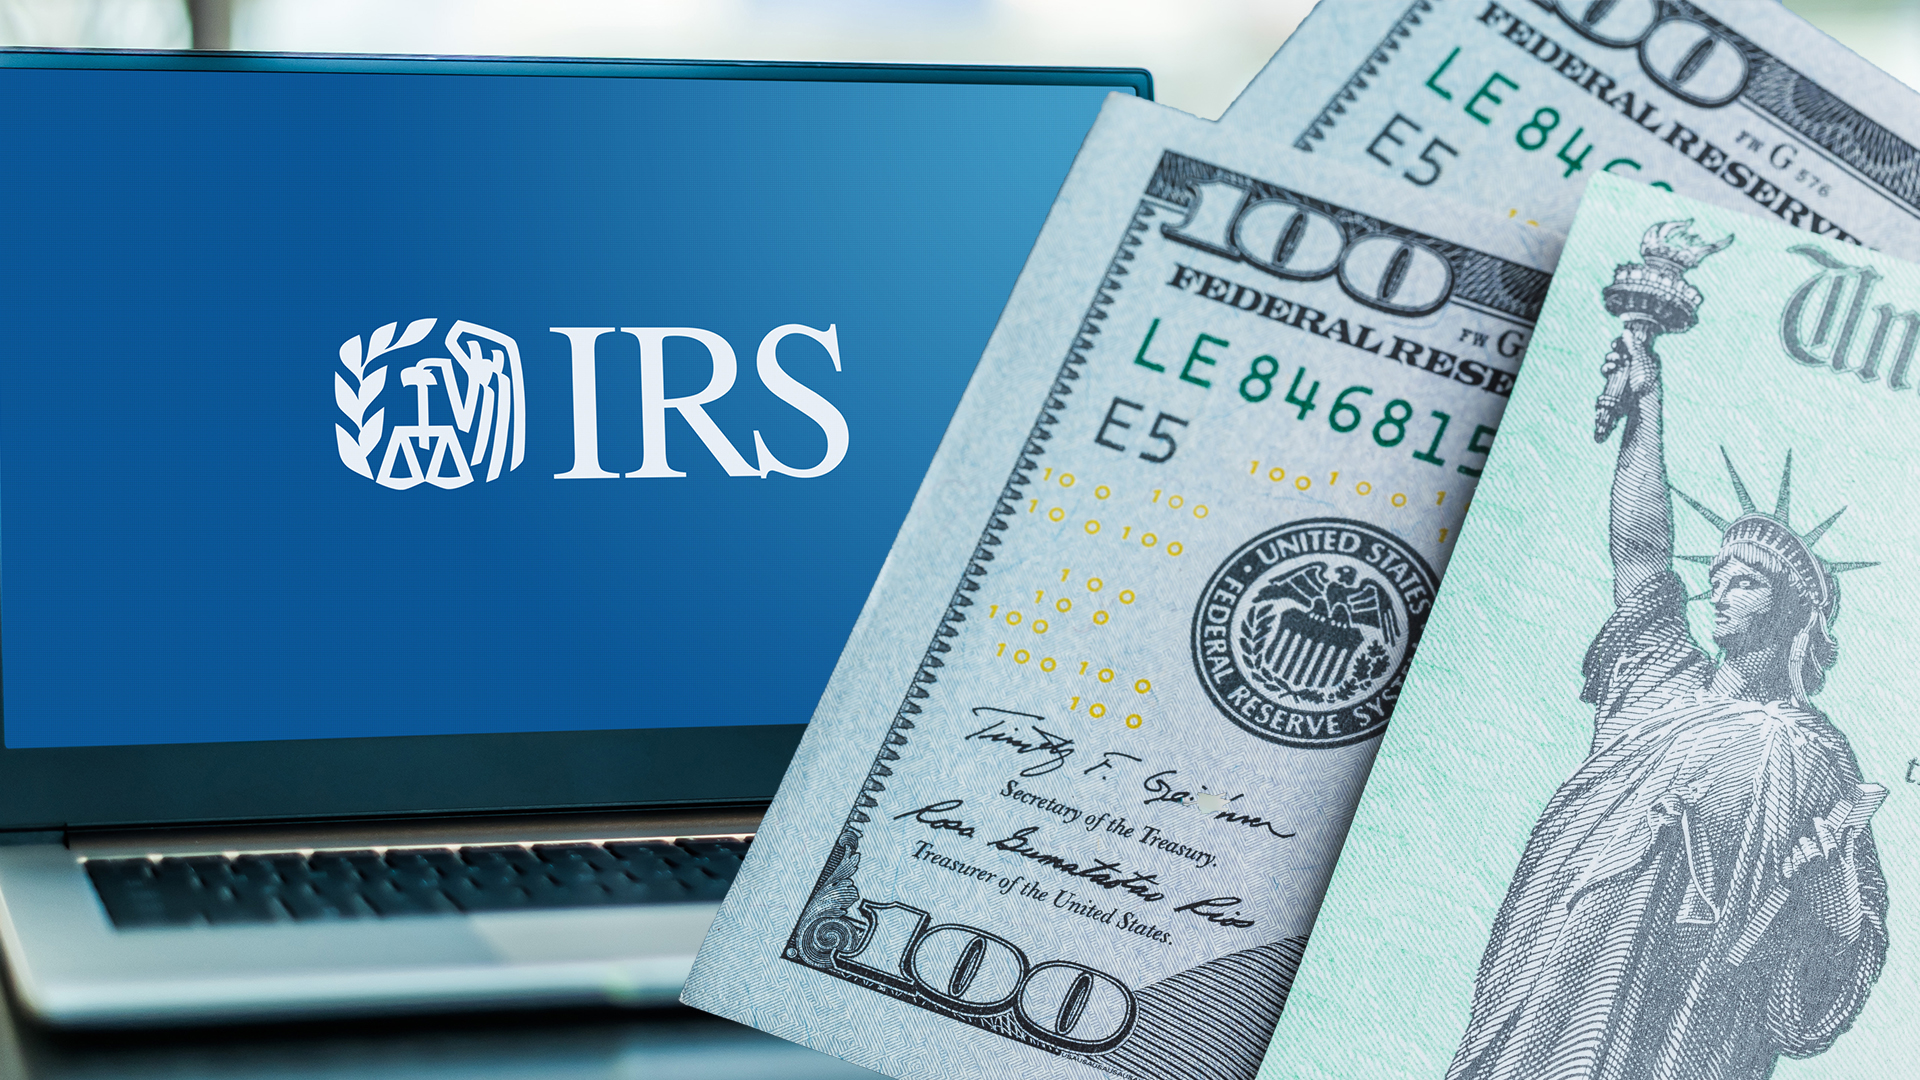 EEUU | IRS anuncia extensión del programa Free File hasta 2029